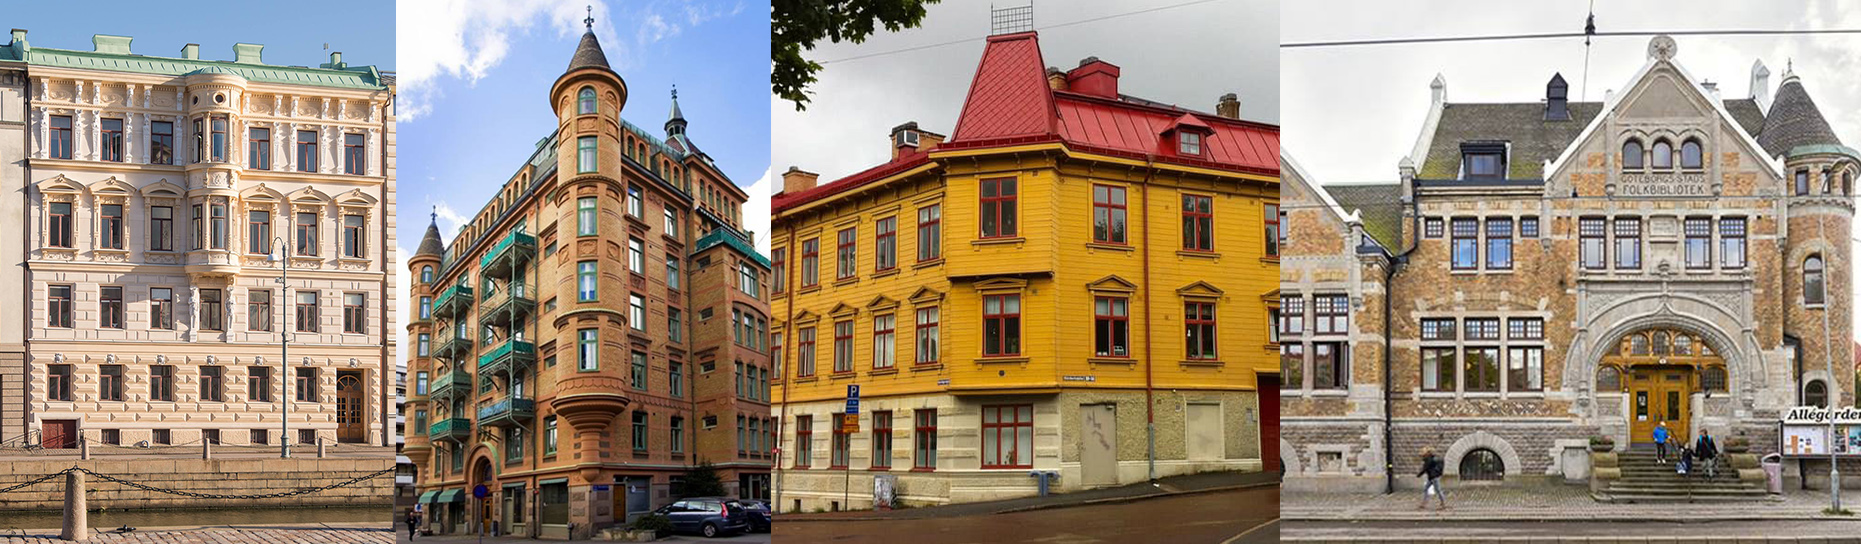 Finns Sveriges vackraste byggnad i Göteborg?